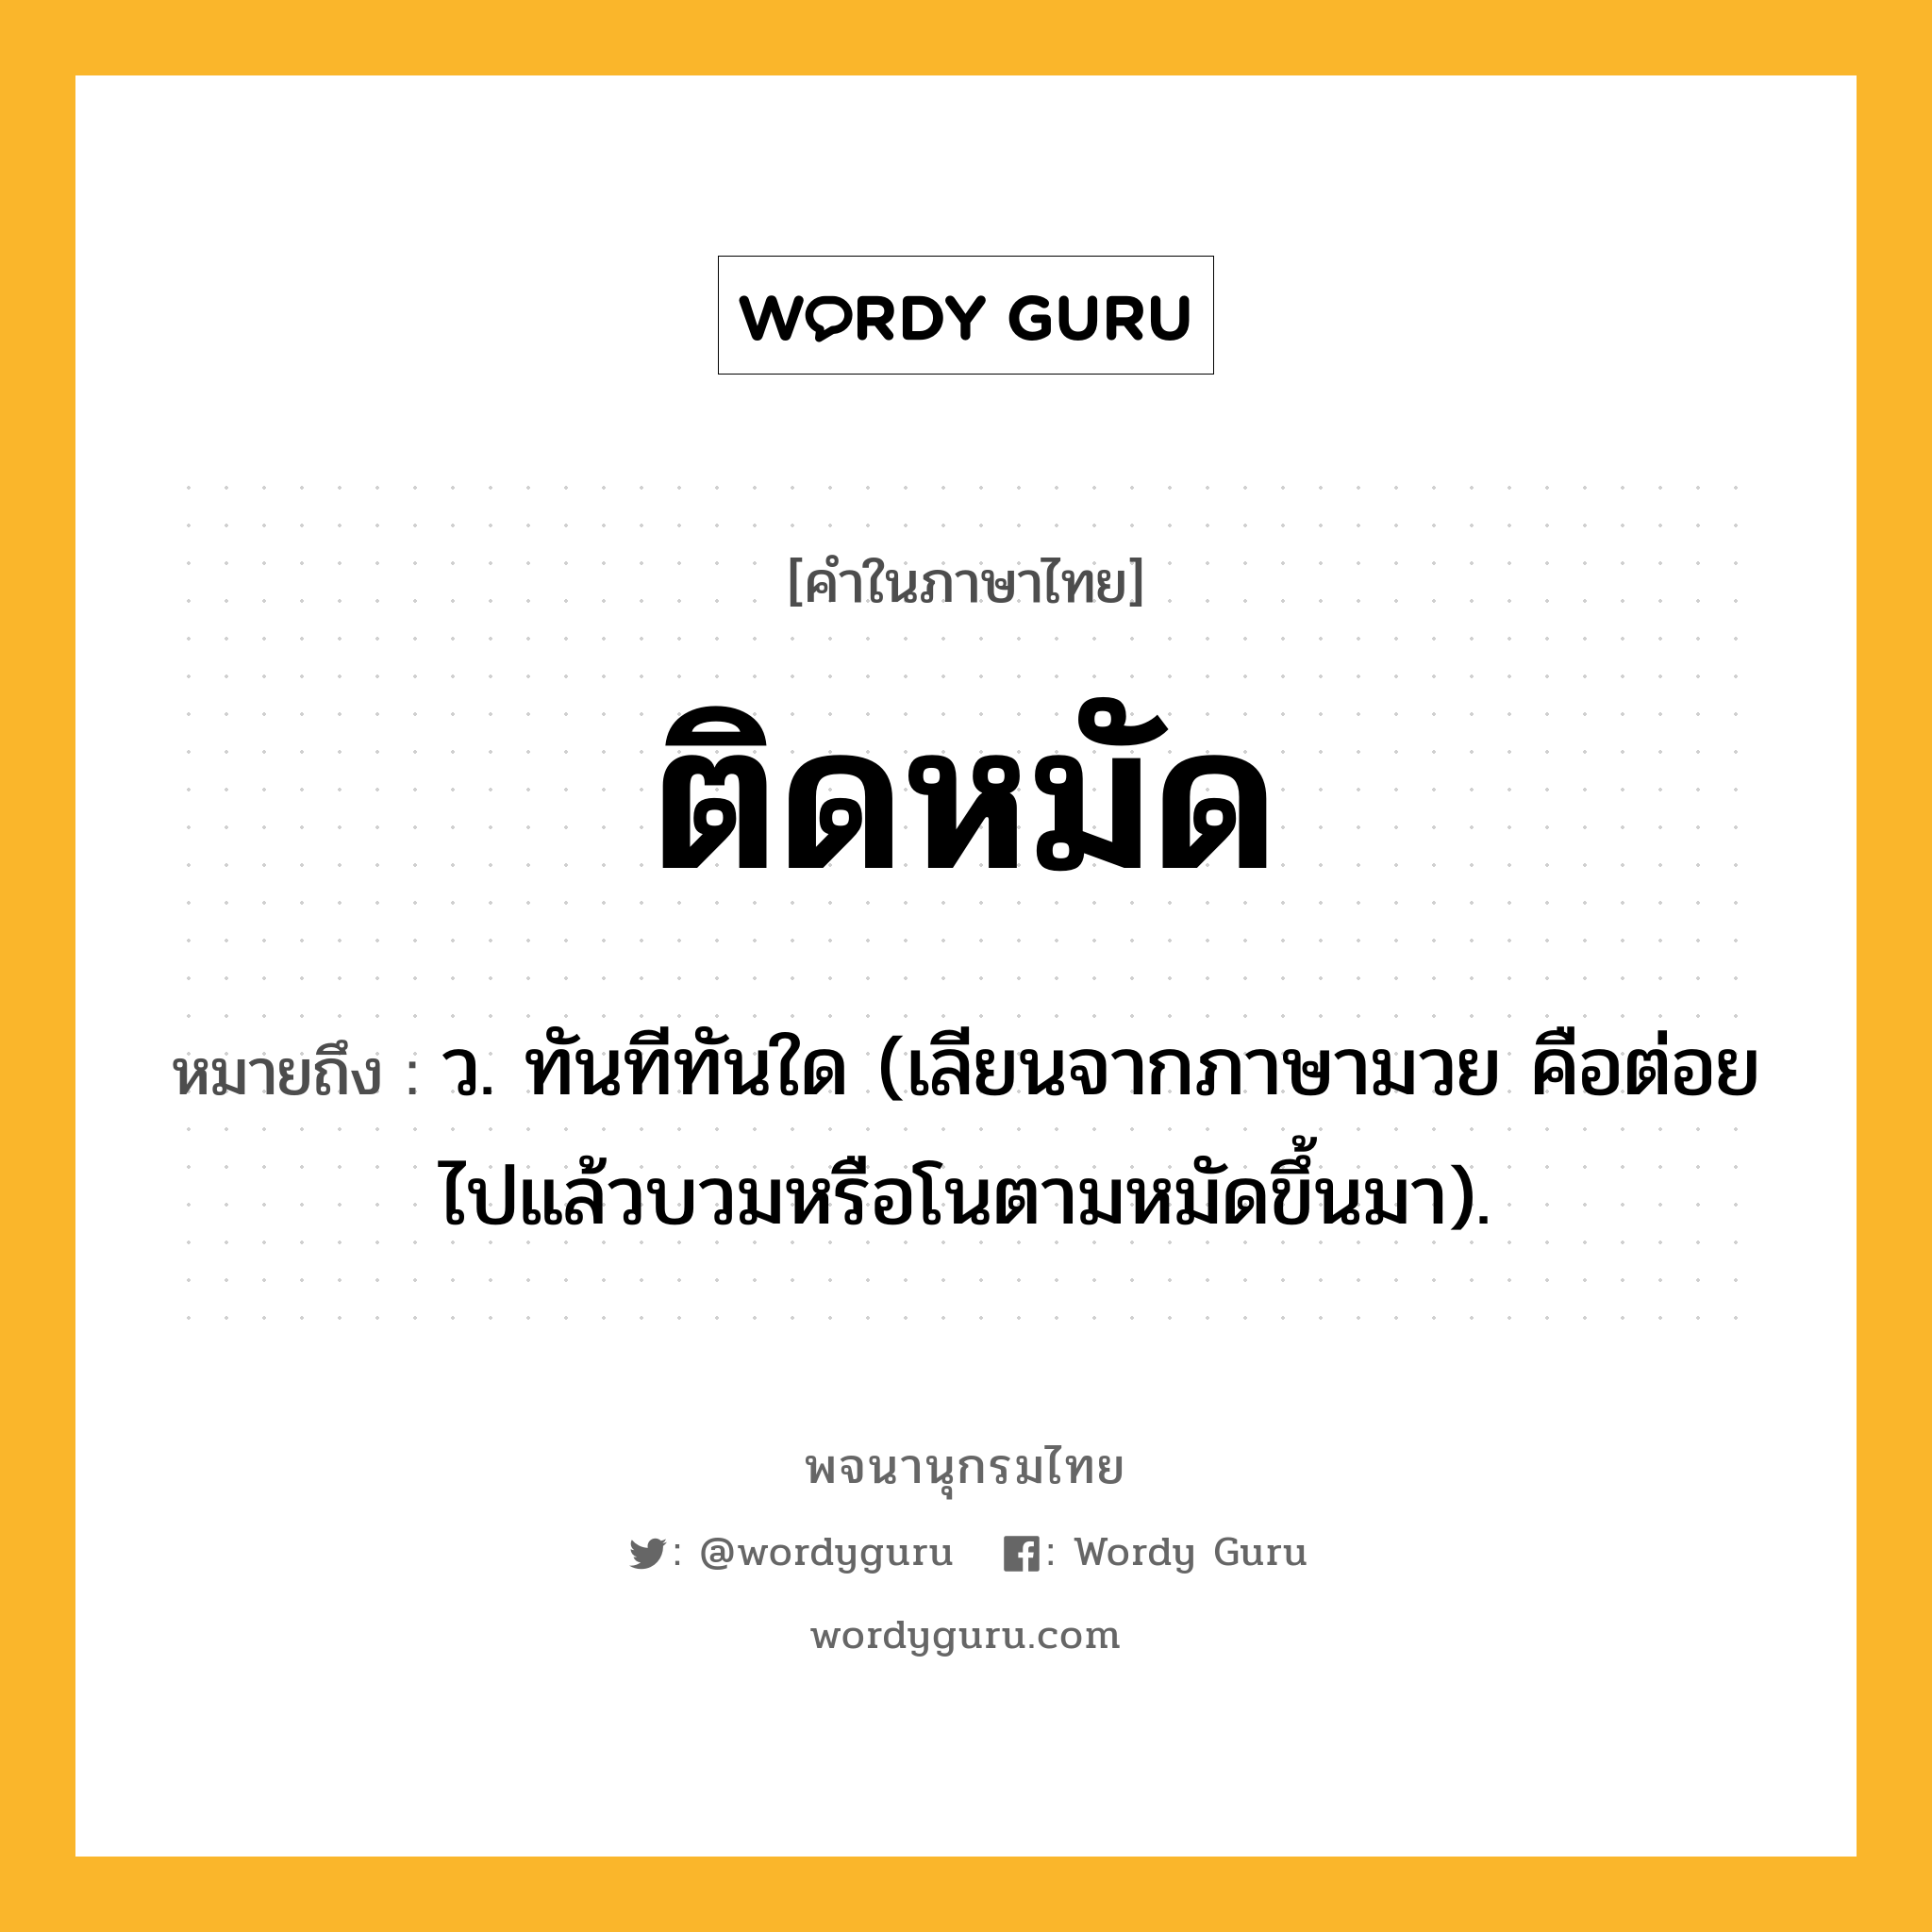 ติดหมัด ความหมาย หมายถึงอะไร?, คำในภาษาไทย ติดหมัด หมายถึง ว. ทันทีทันใด (เลียนจากภาษามวย คือต่อยไปแล้วบวมหรือโนตามหมัดขึ้นมา).